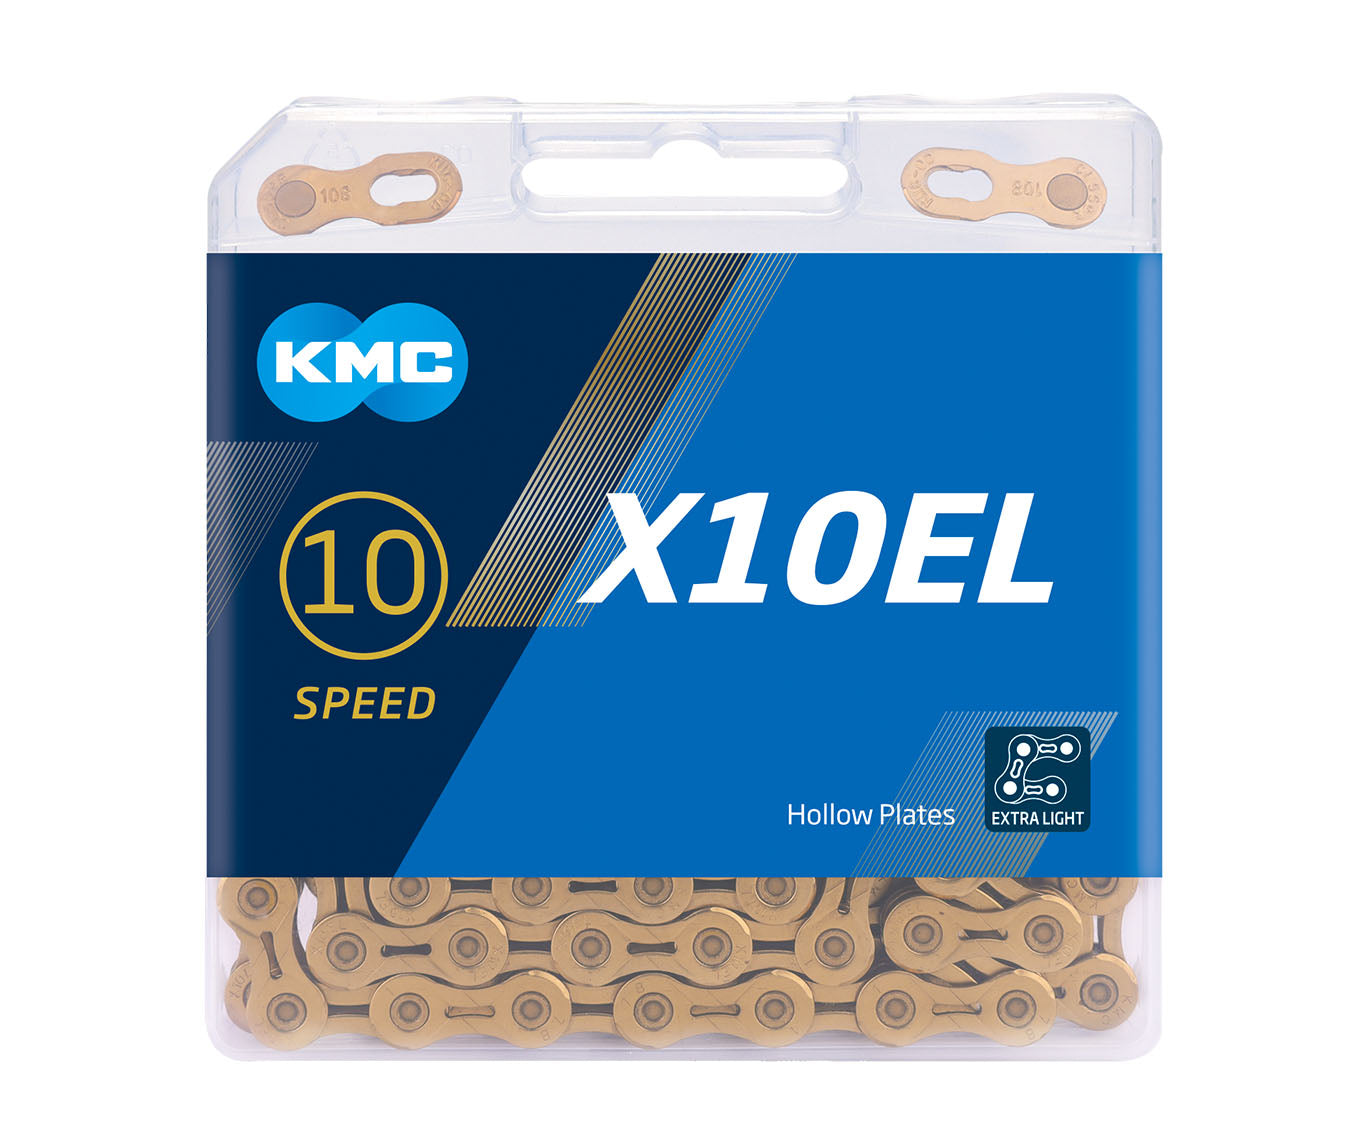 Cadenilla 10v X10EL GOLD 116L KMC